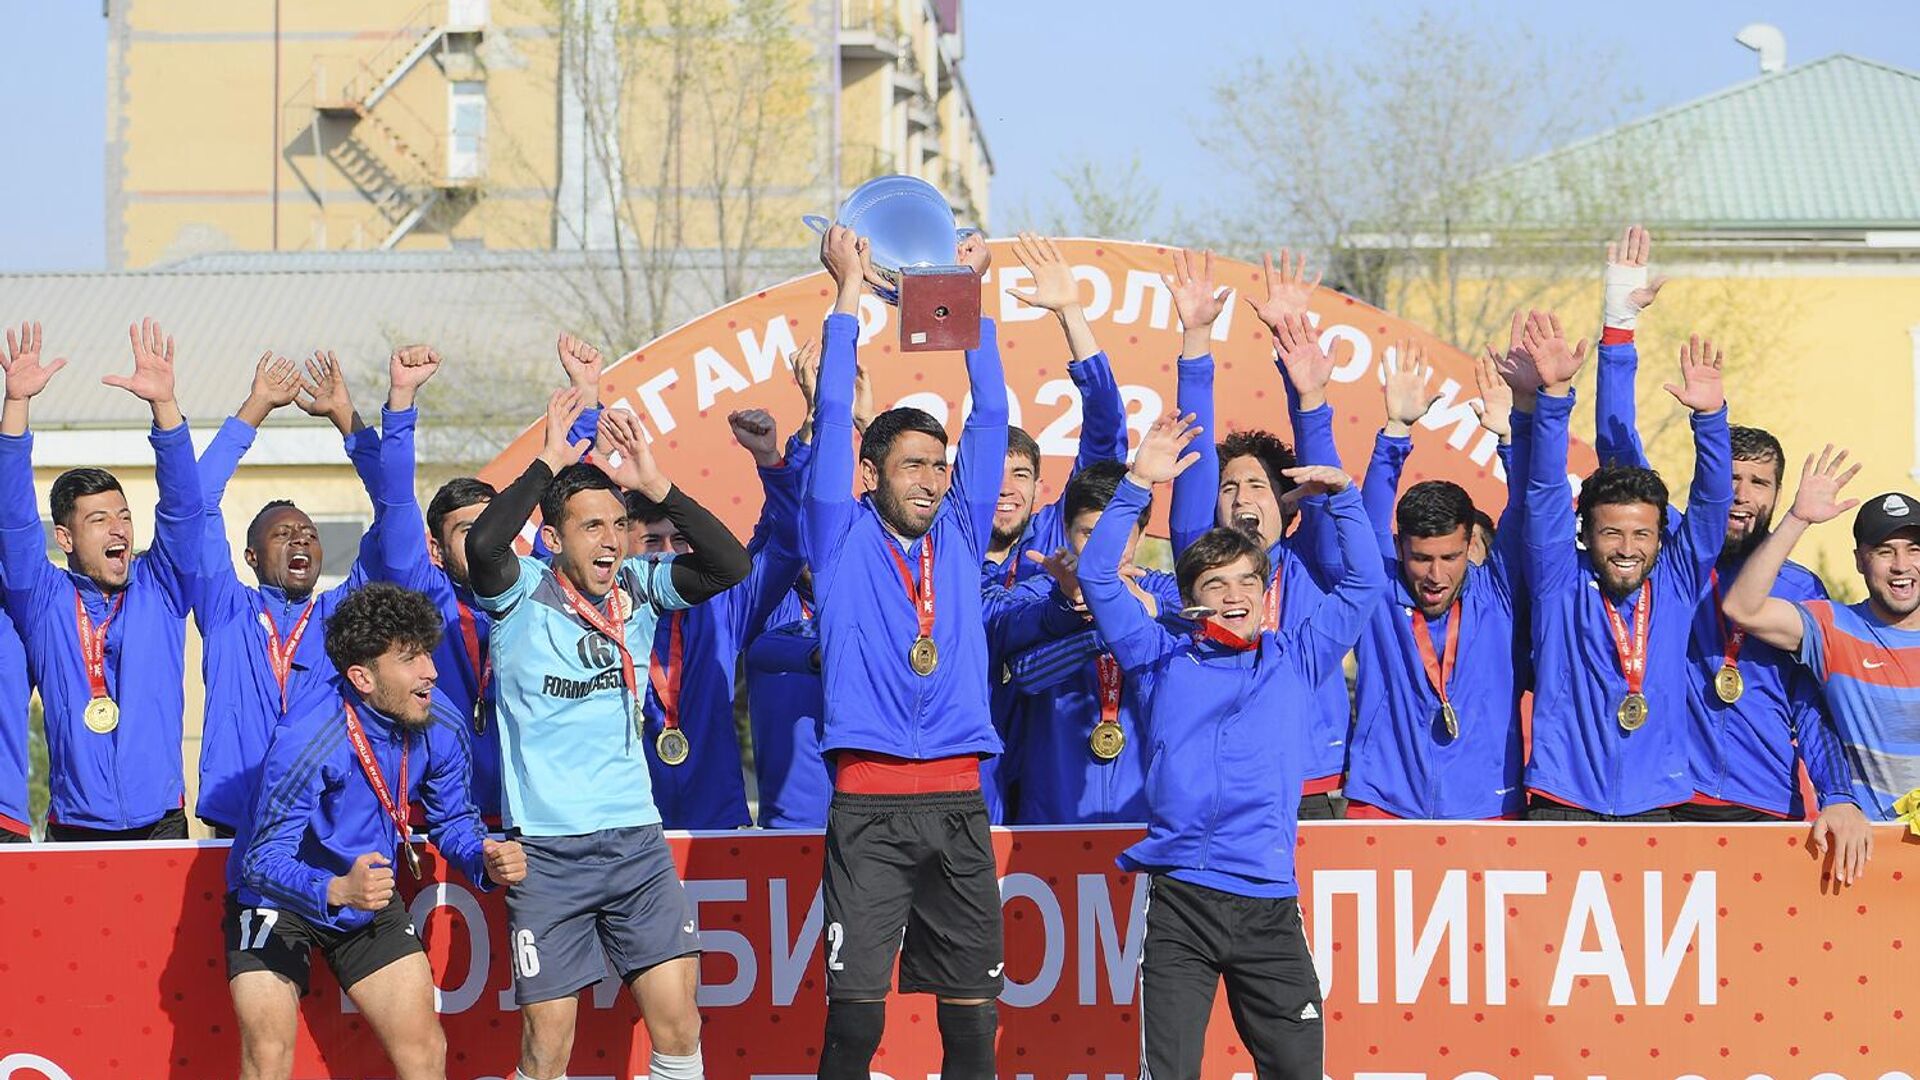 Хосилот стал обладателем кубка футбольной лиги Таджикистана-2023 - Sputnik Таджикистан, 1920, 15.03.2023